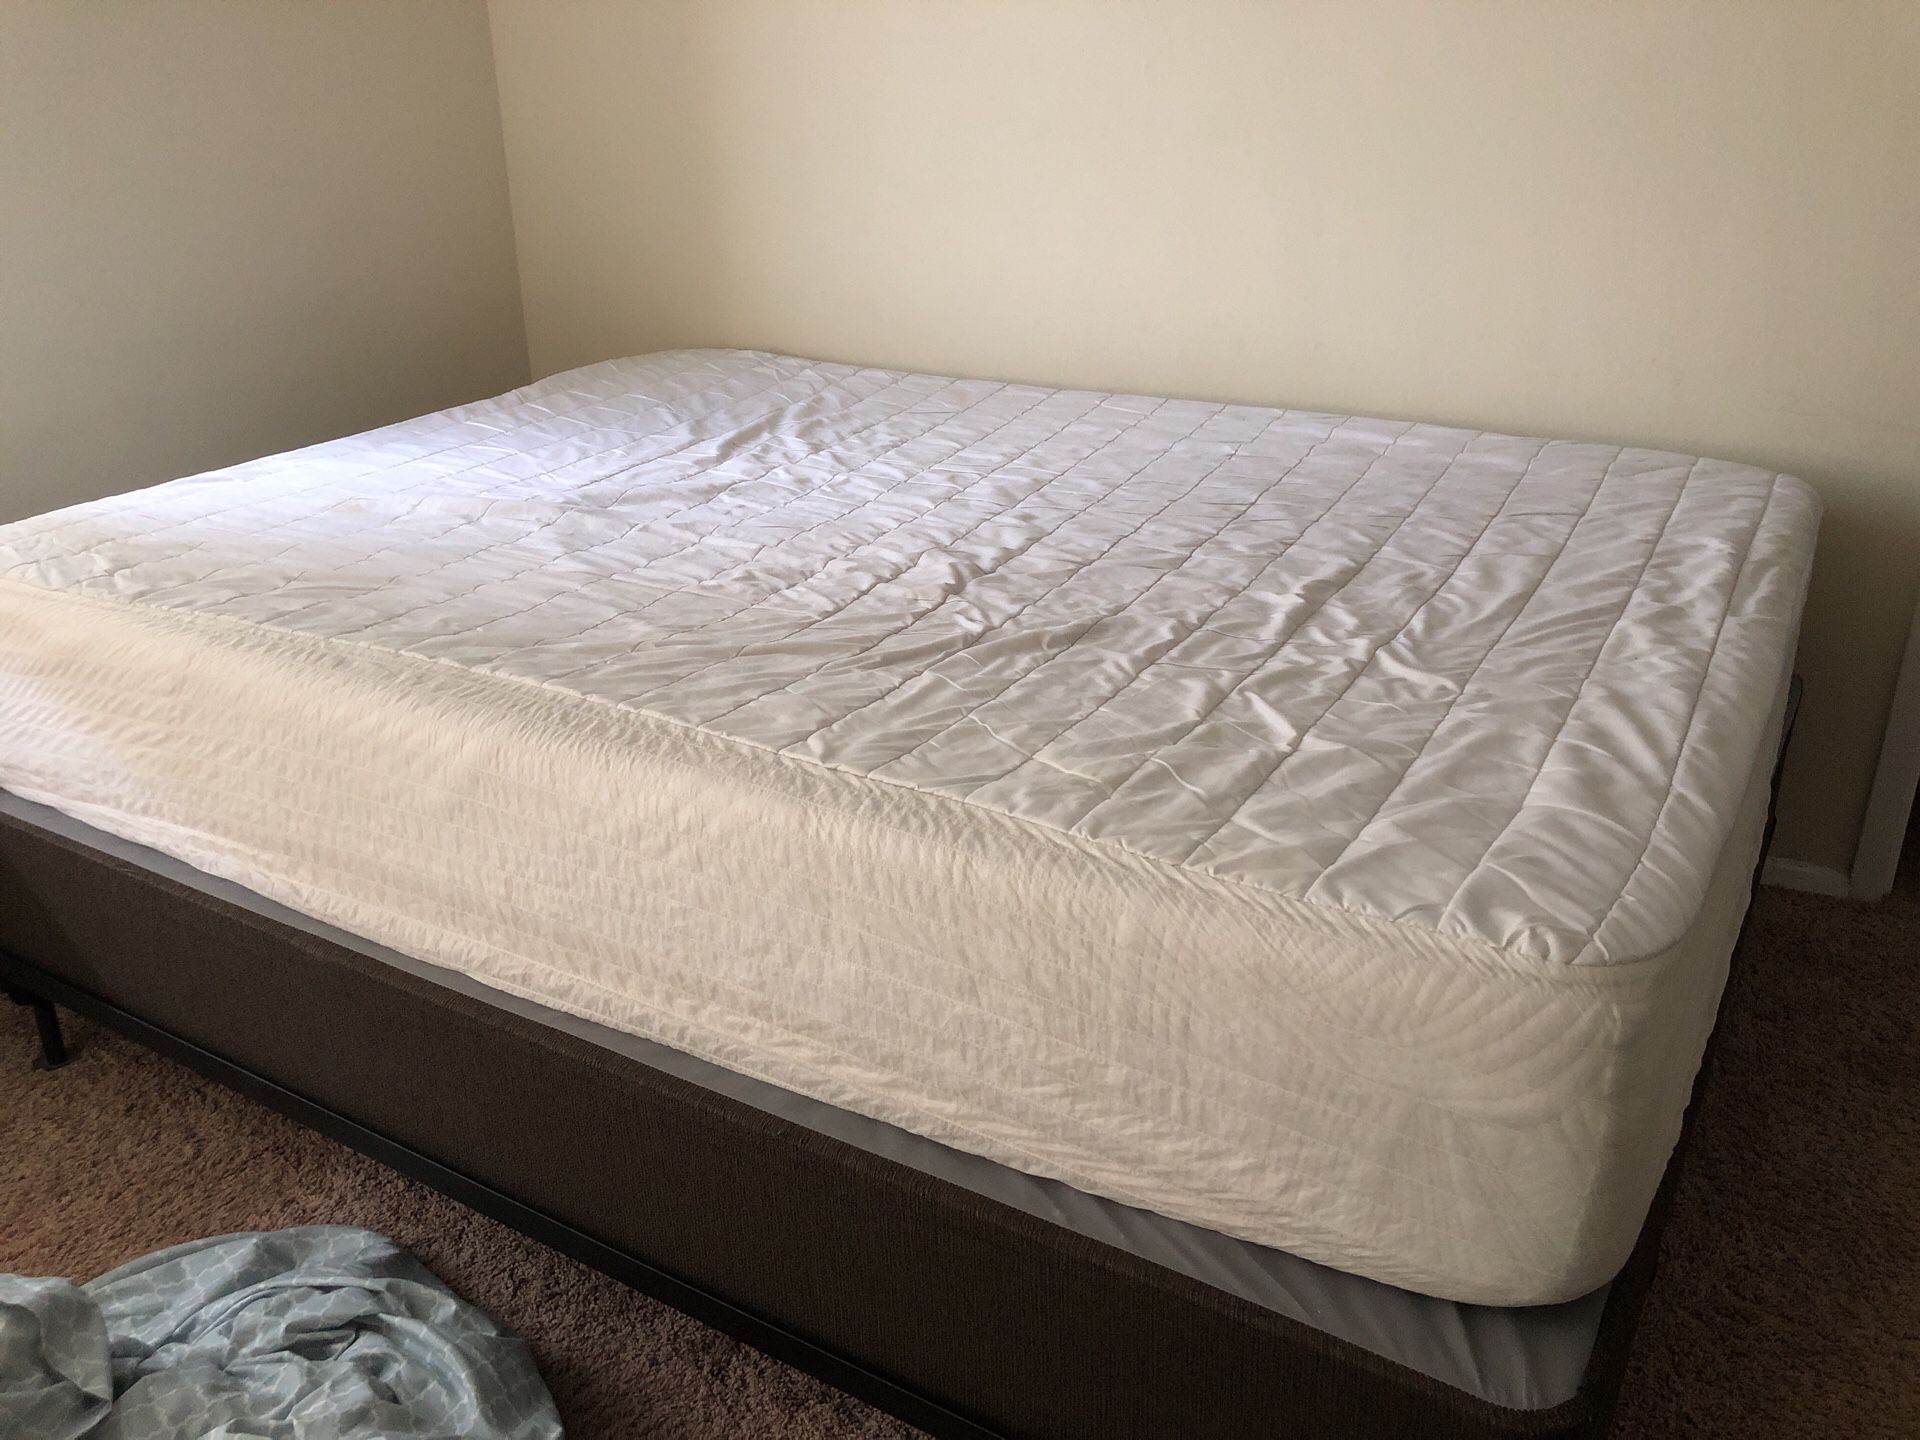 Queen size good quality mattress